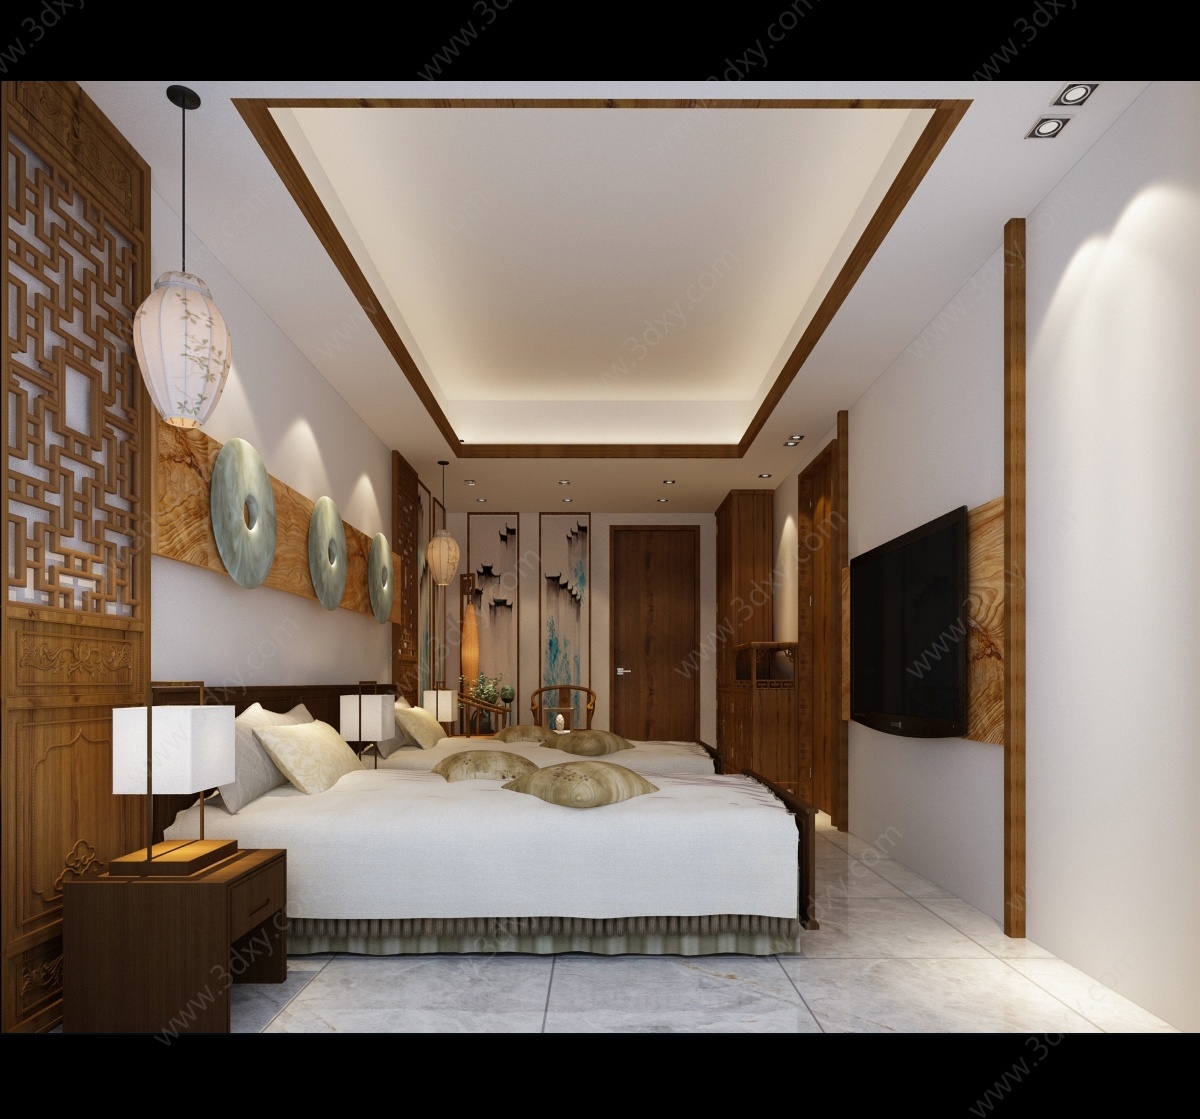 中式民宿休息区客房套房3D模型